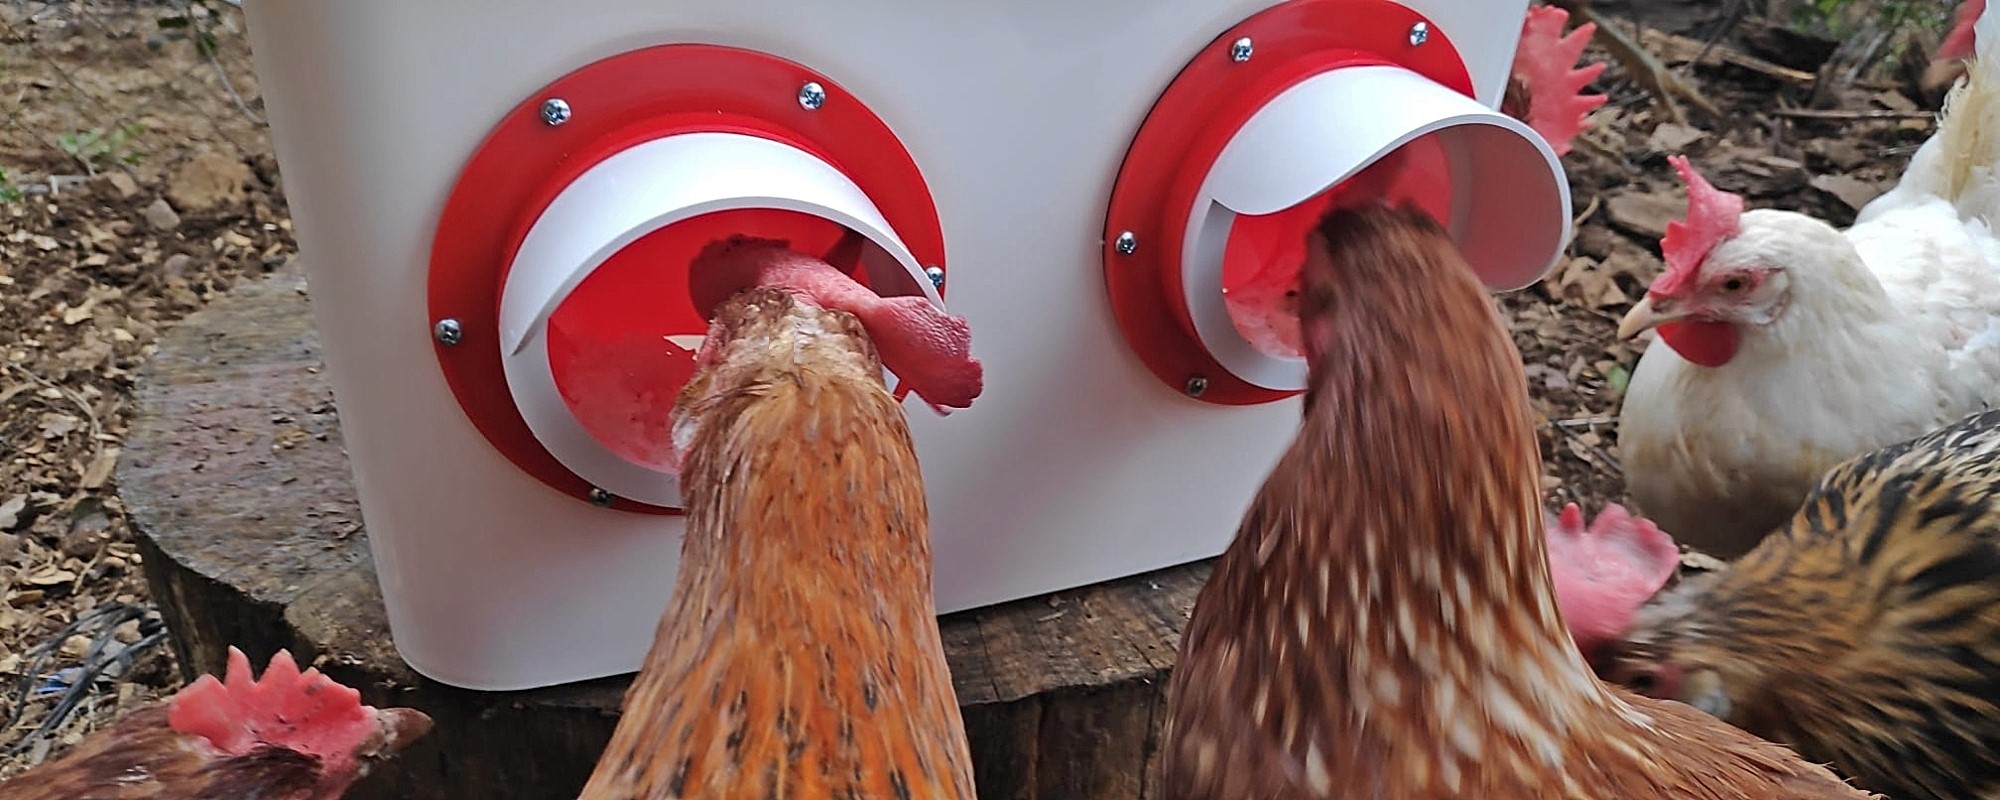 Ponedero para gallinas Avelandia: comedero para gallinas